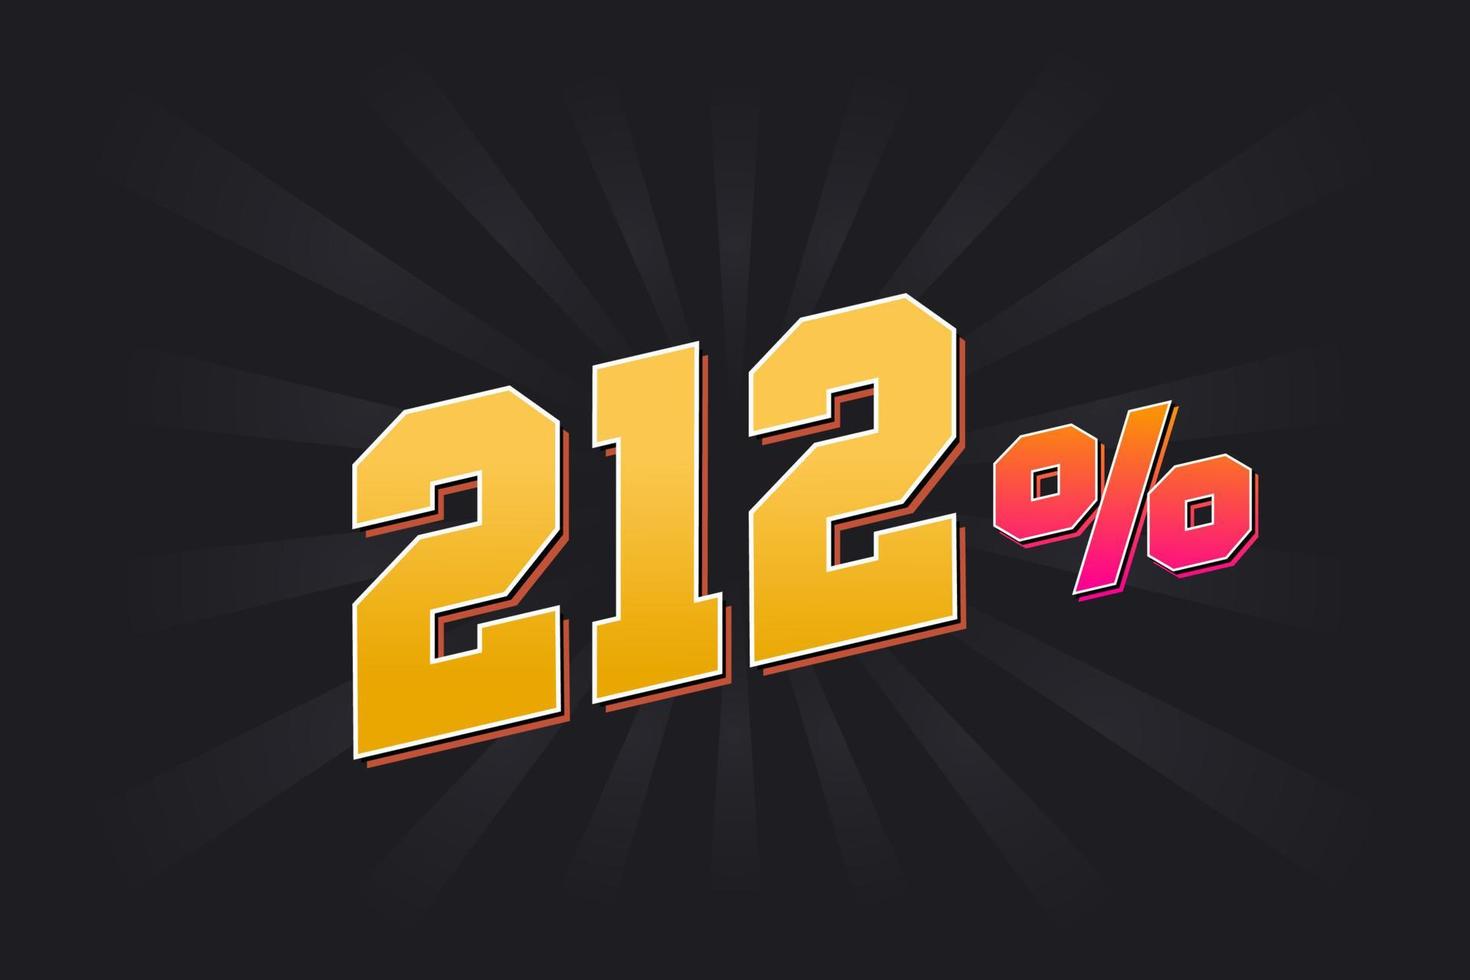 212 banner de descuento con fondo oscuro y texto amarillo. 212 por ciento de diseño promocional de ventas. vector